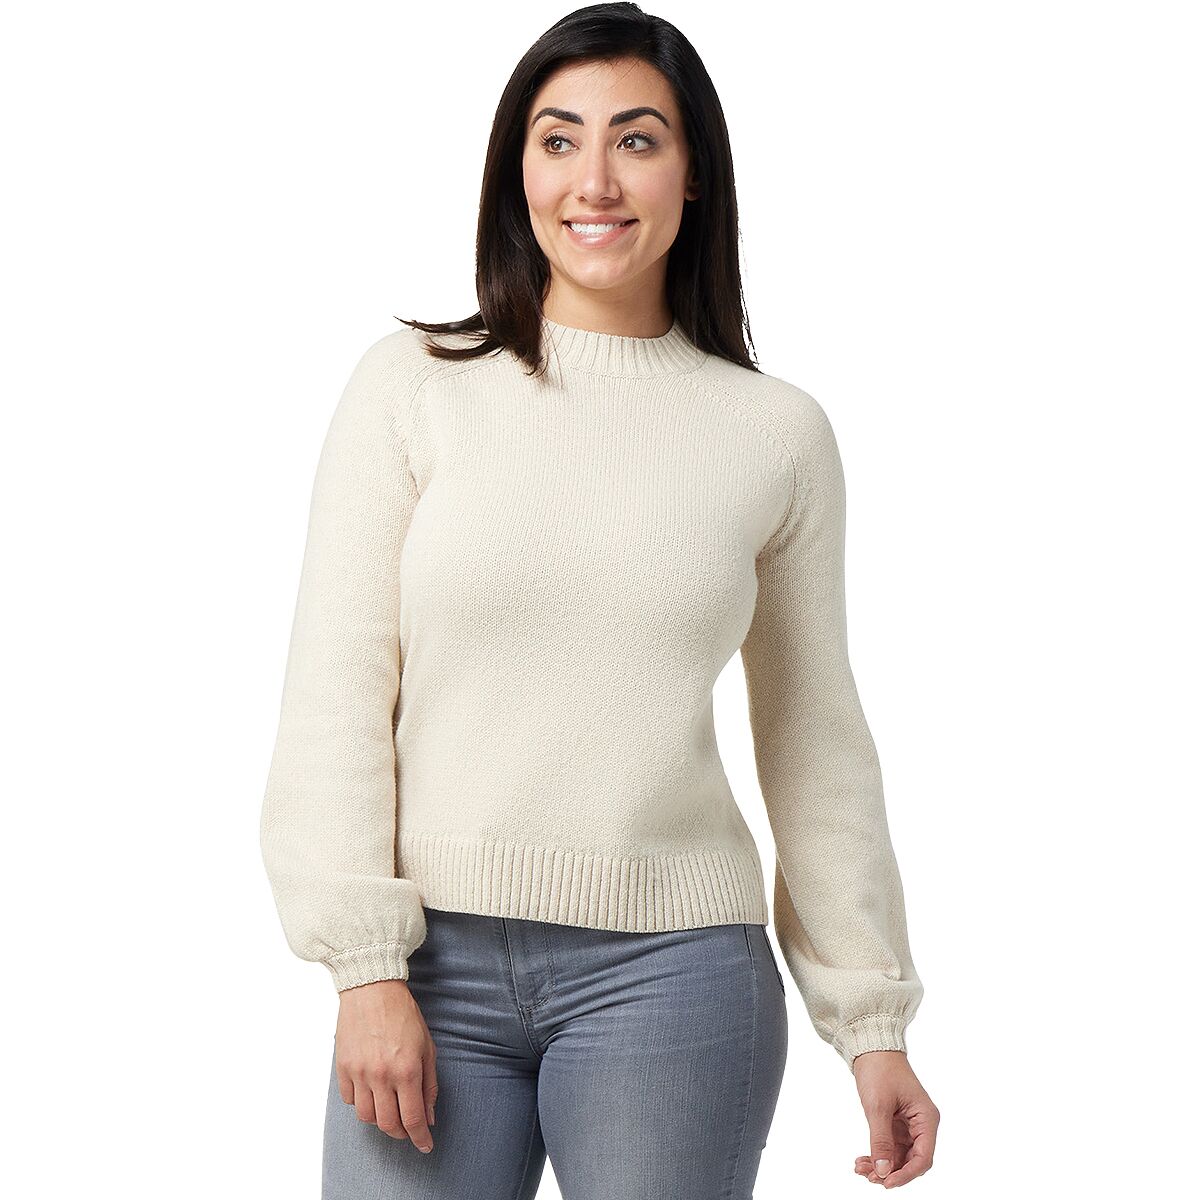 Smartwool Cozy Lodge Bell Sleeve Sweater - Women's